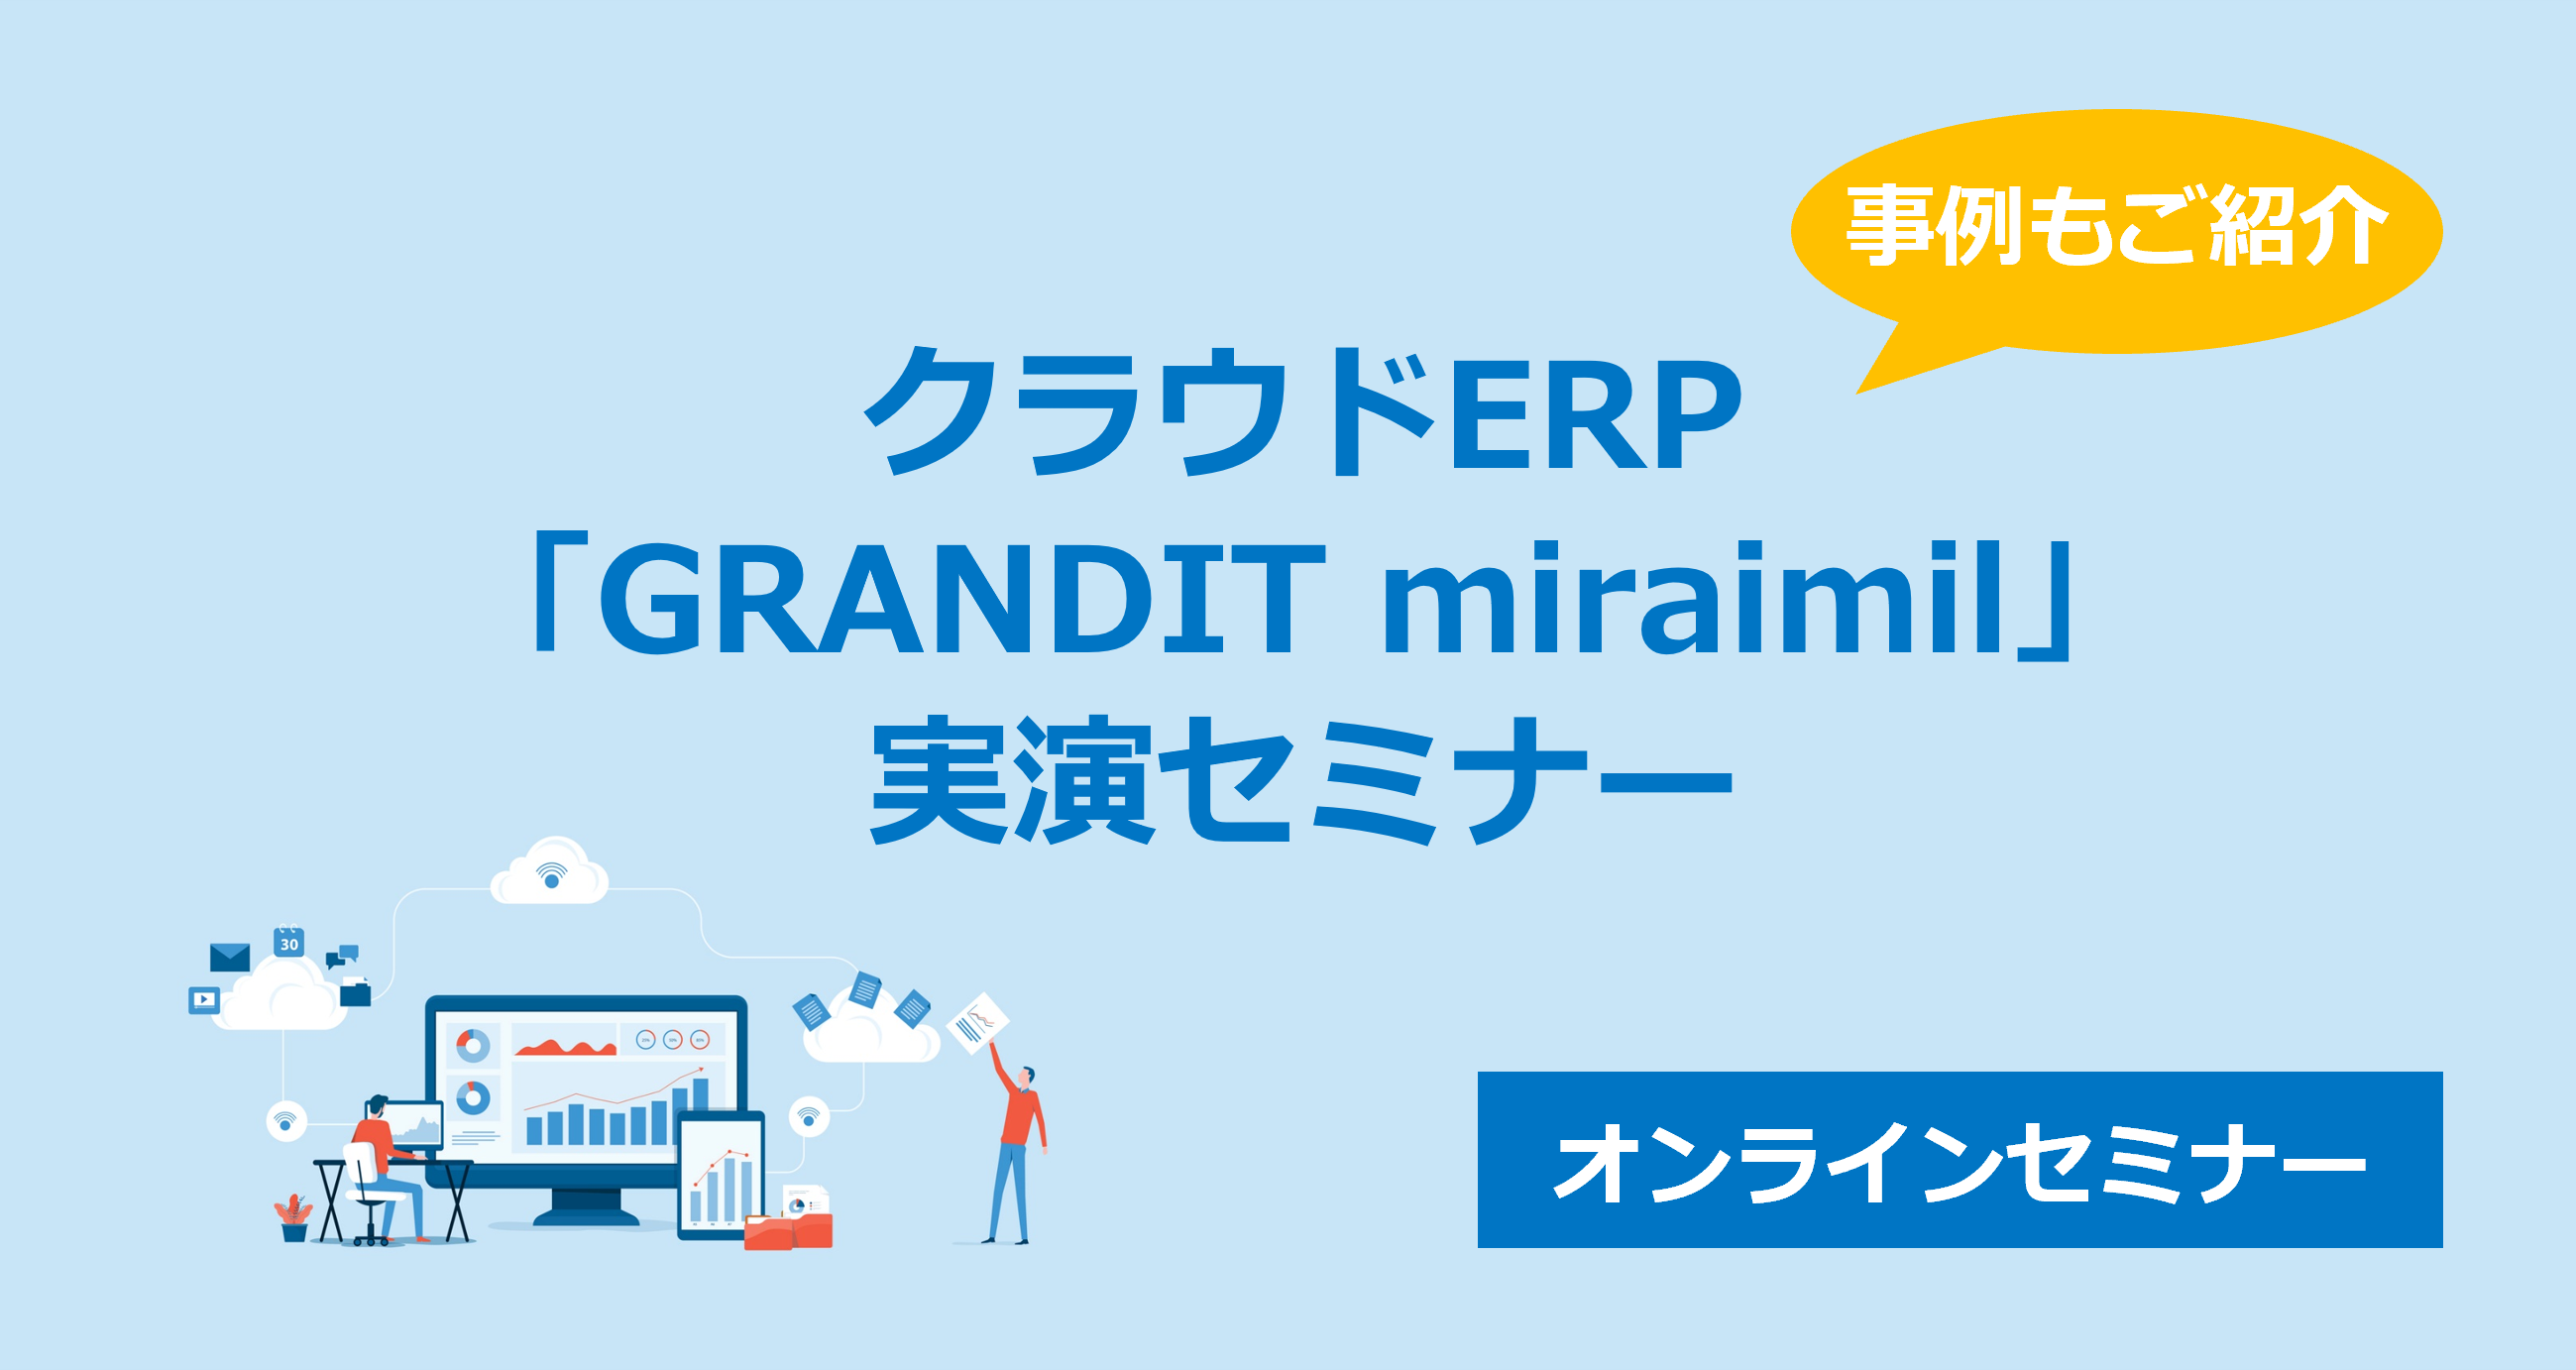 クラウドERP「GRANDIT miraimil」実演セミナー 無料開催2月27日(火)